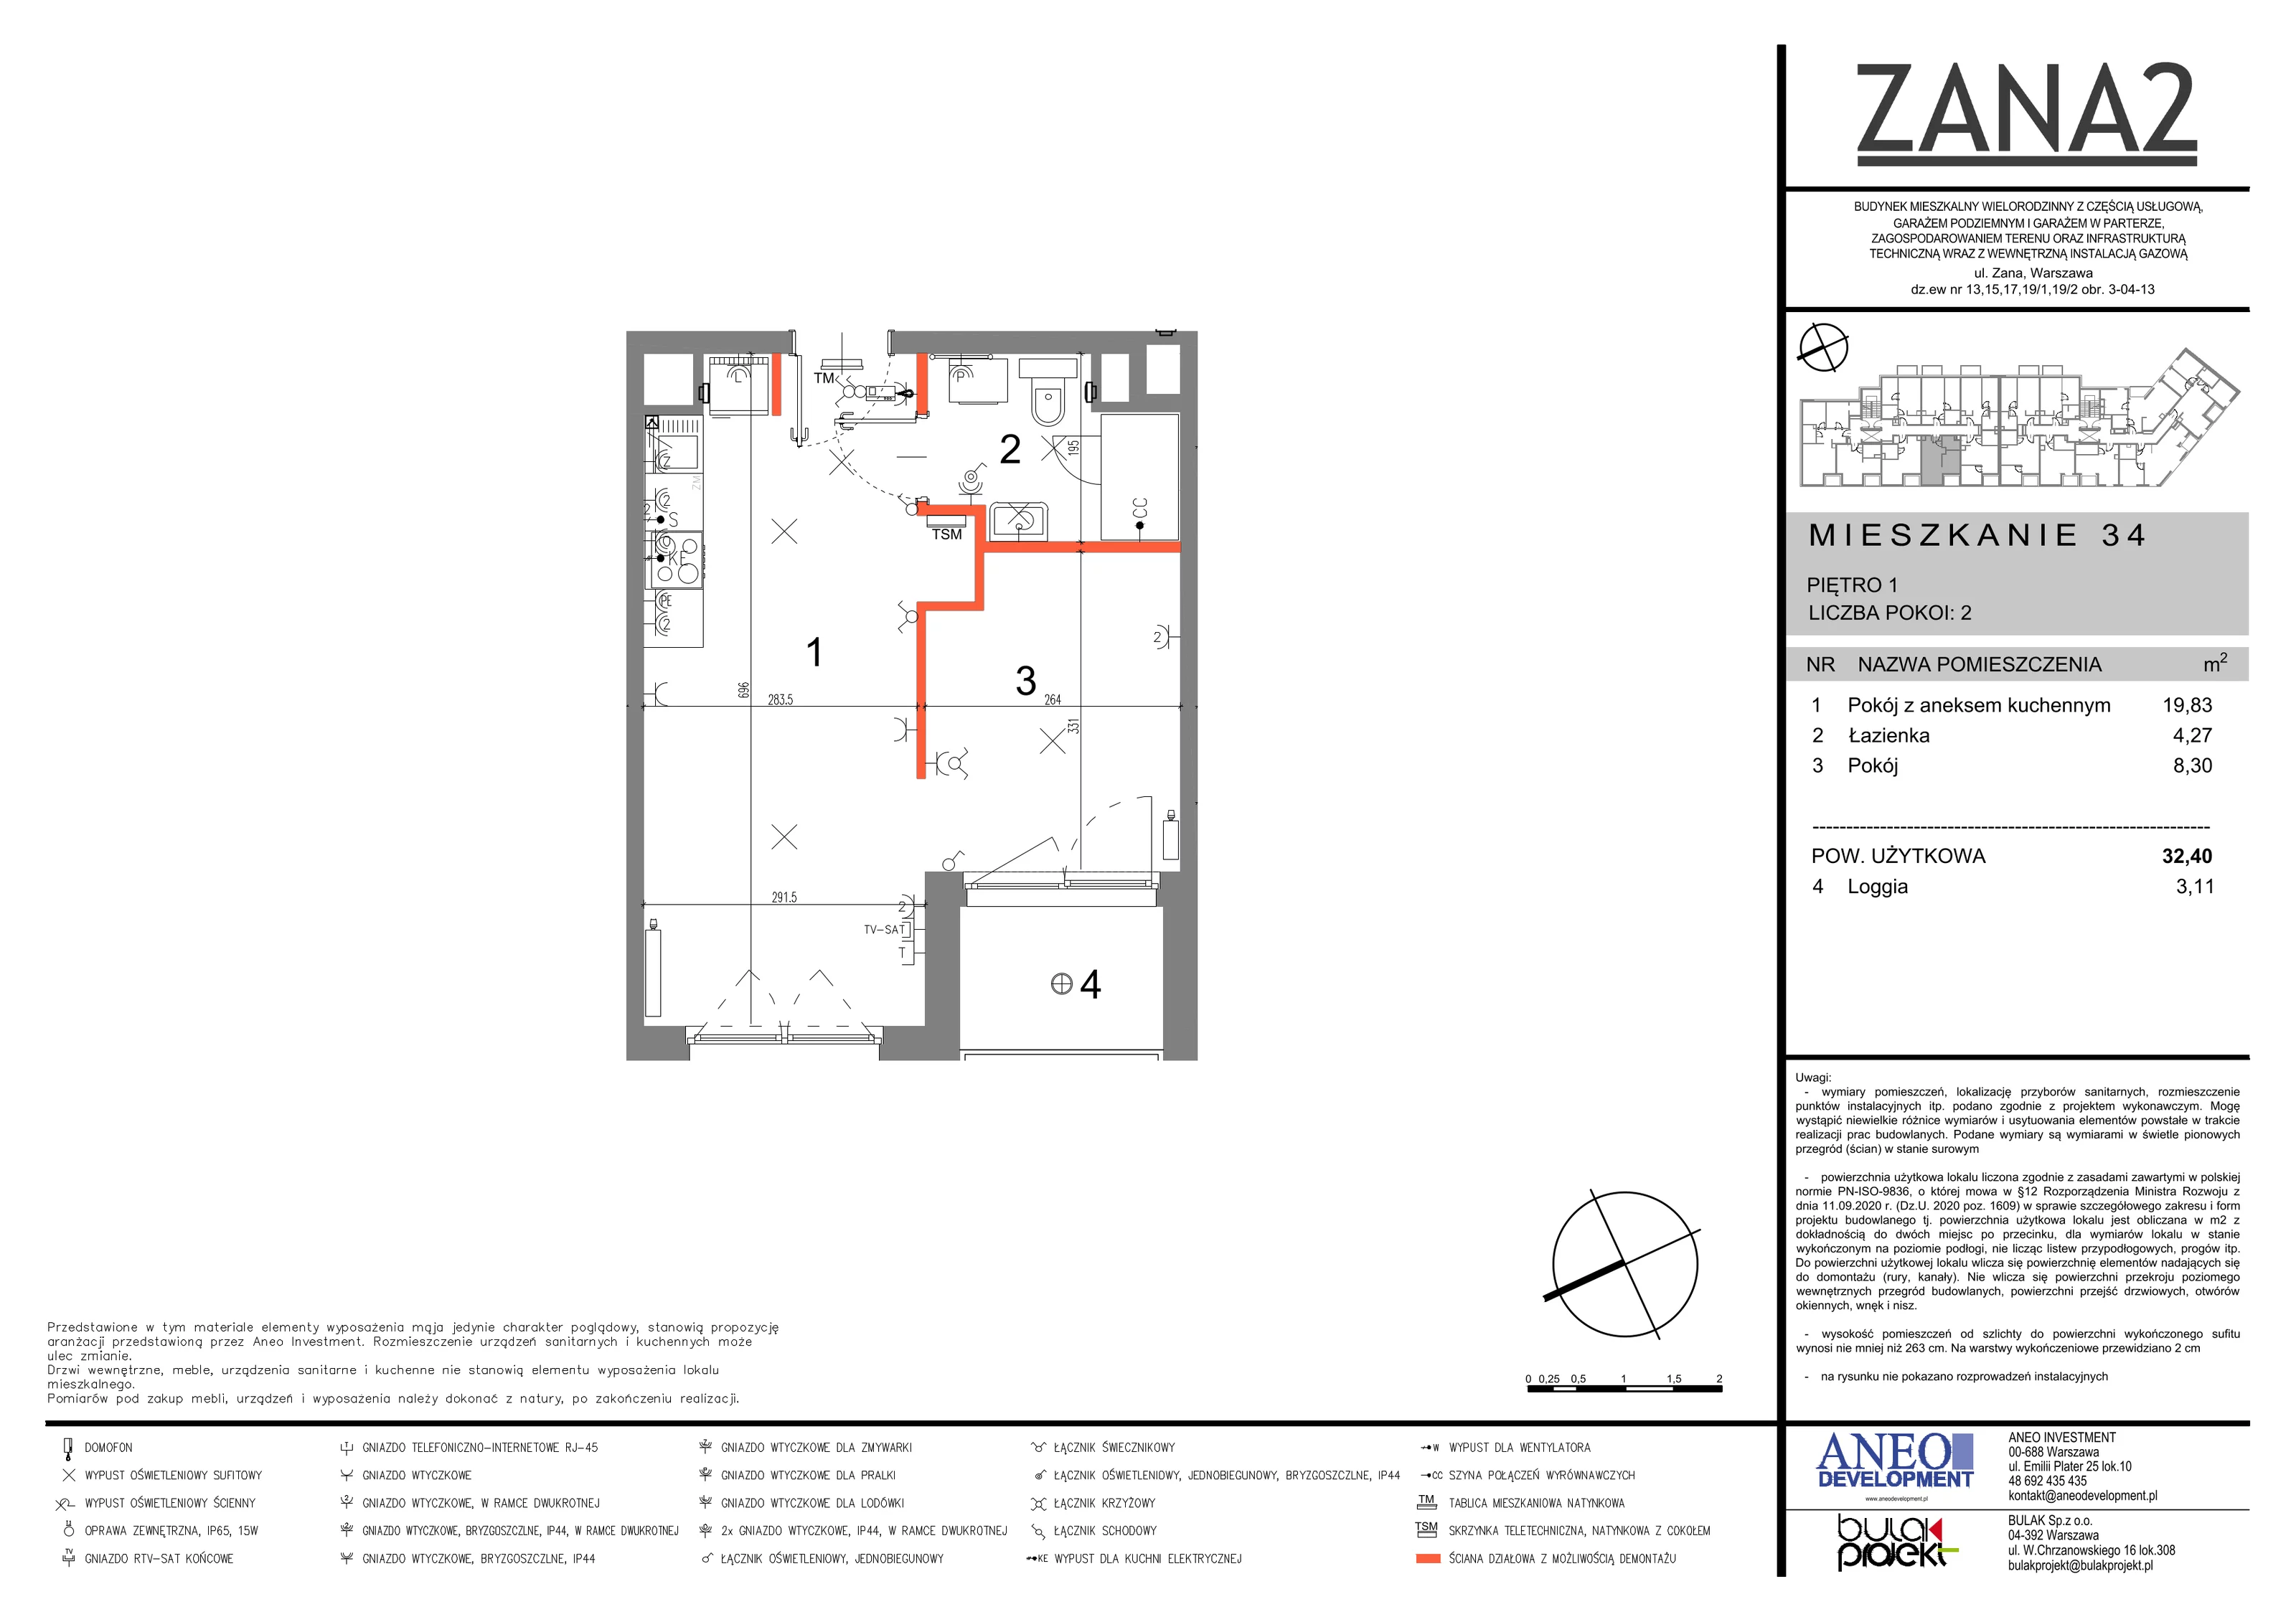 Mieszkanie 32,40 m², piętro 1, oferta nr 34, Zana 2, Warszawa, Praga Południe, Gocławek, ul. Tomasza Zana